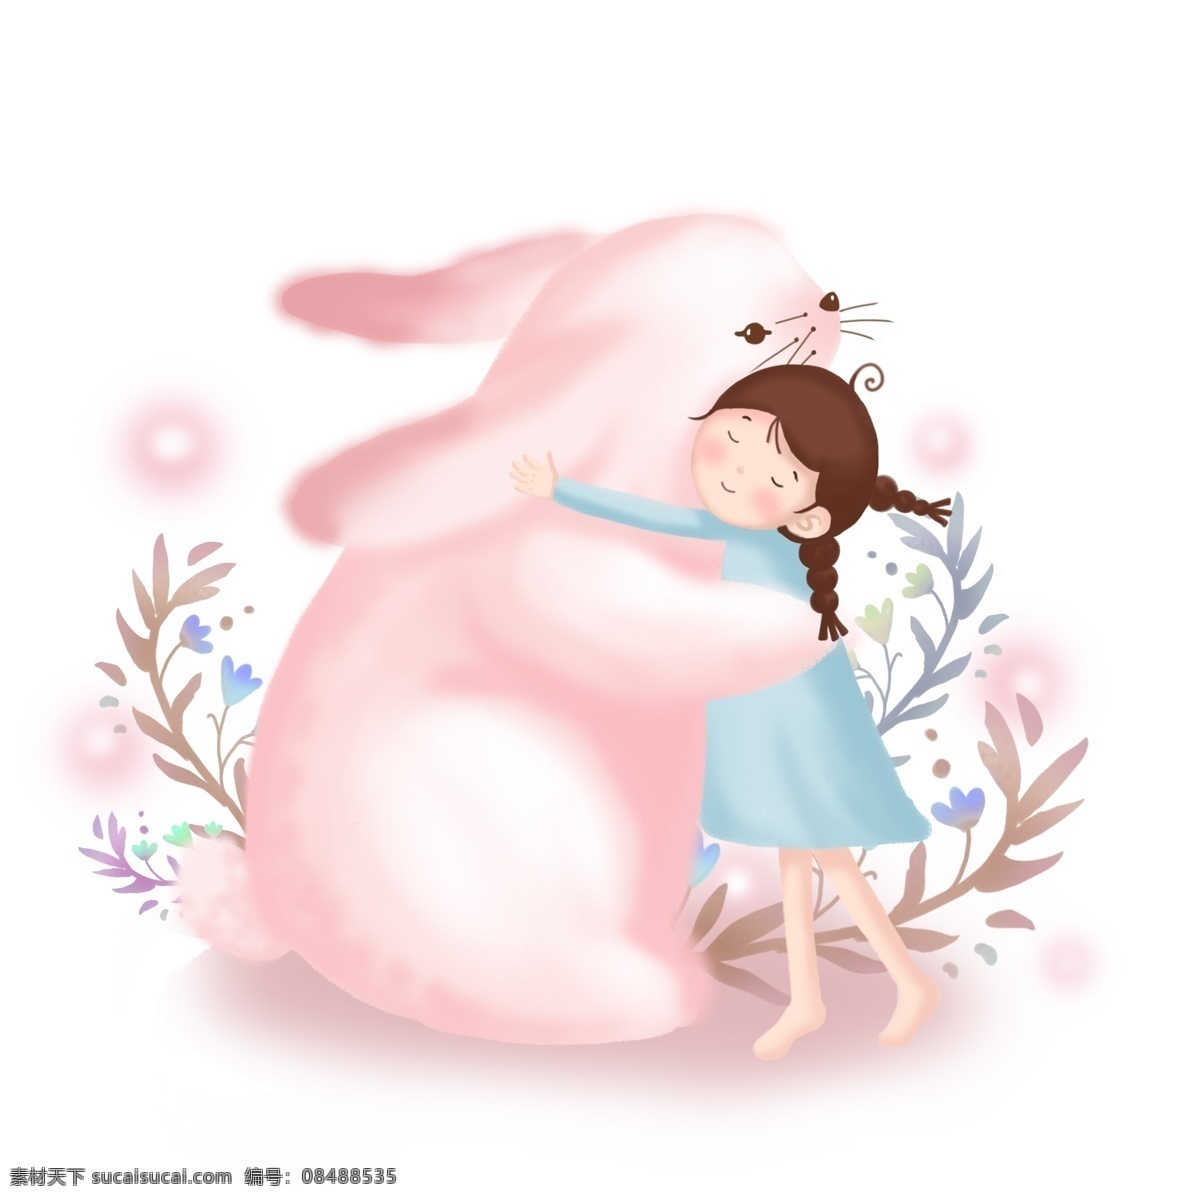 卡通 手绘 梦幻 主题 童话故事 小女孩 可爱 萌 系 小 兔子 小兔子拥抱 拟人动物 粉色系插画 梦幻梦境主题 粉红色系